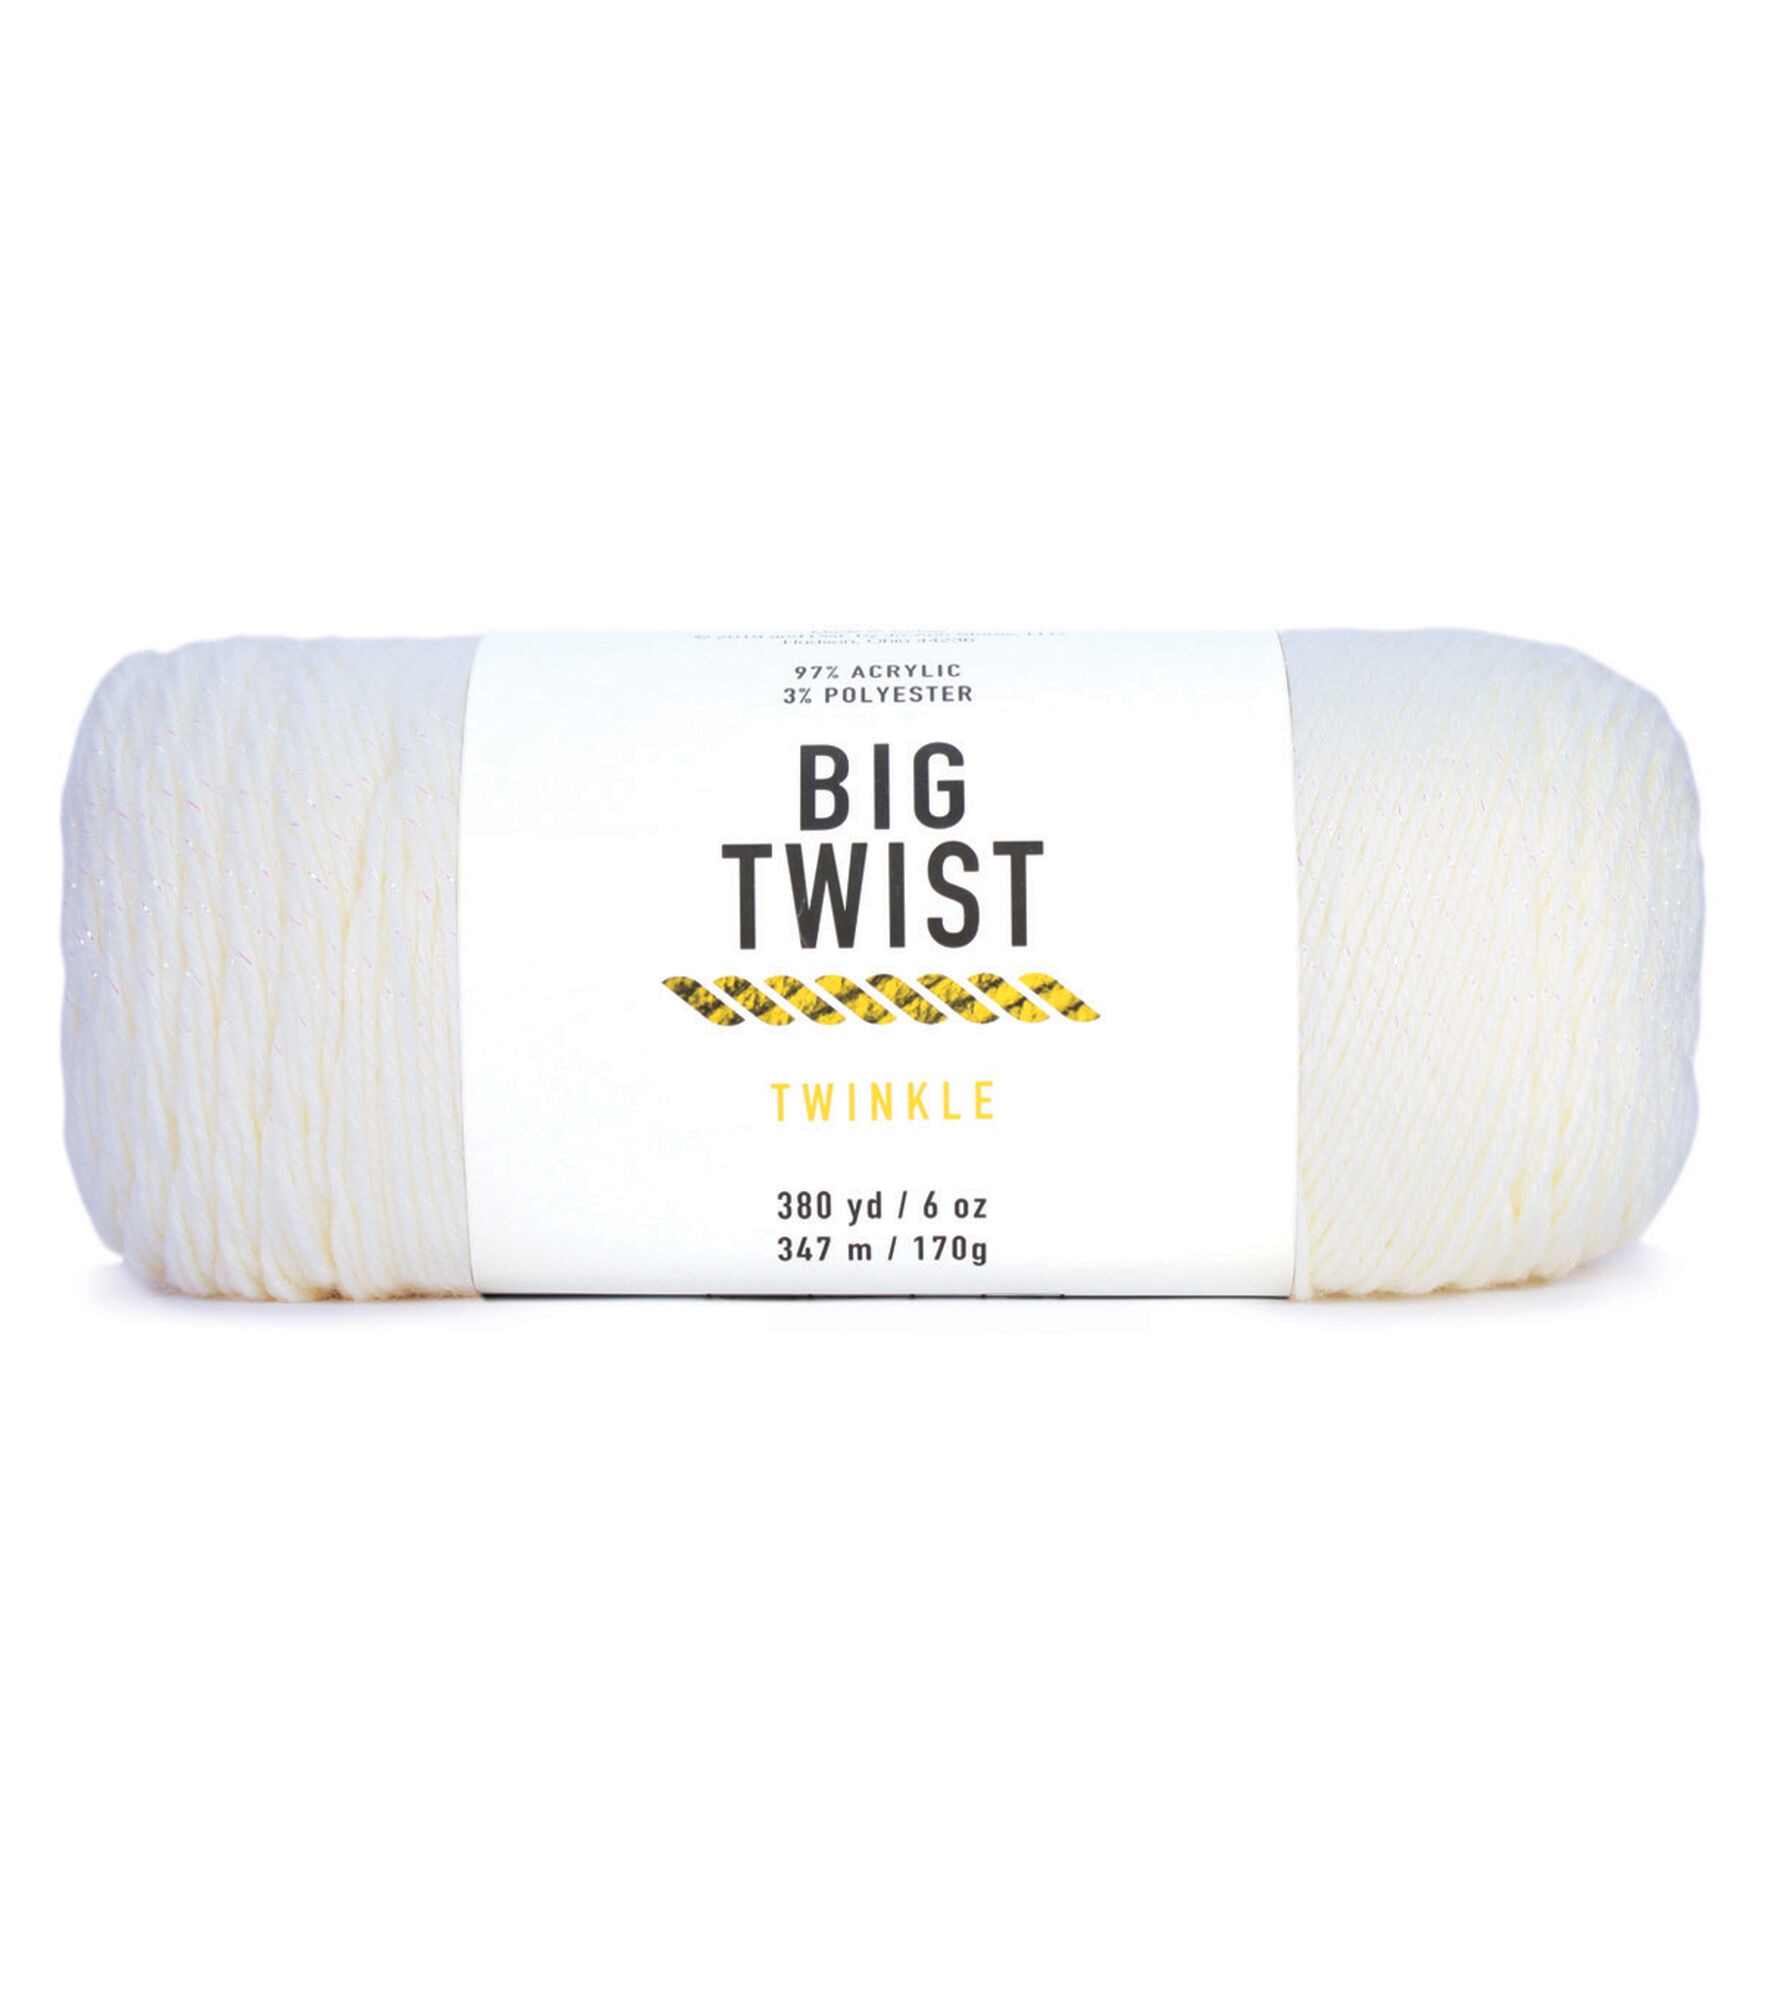 Twinkle 380yds Worsted Acrylic Blend Yarn by Big Twist